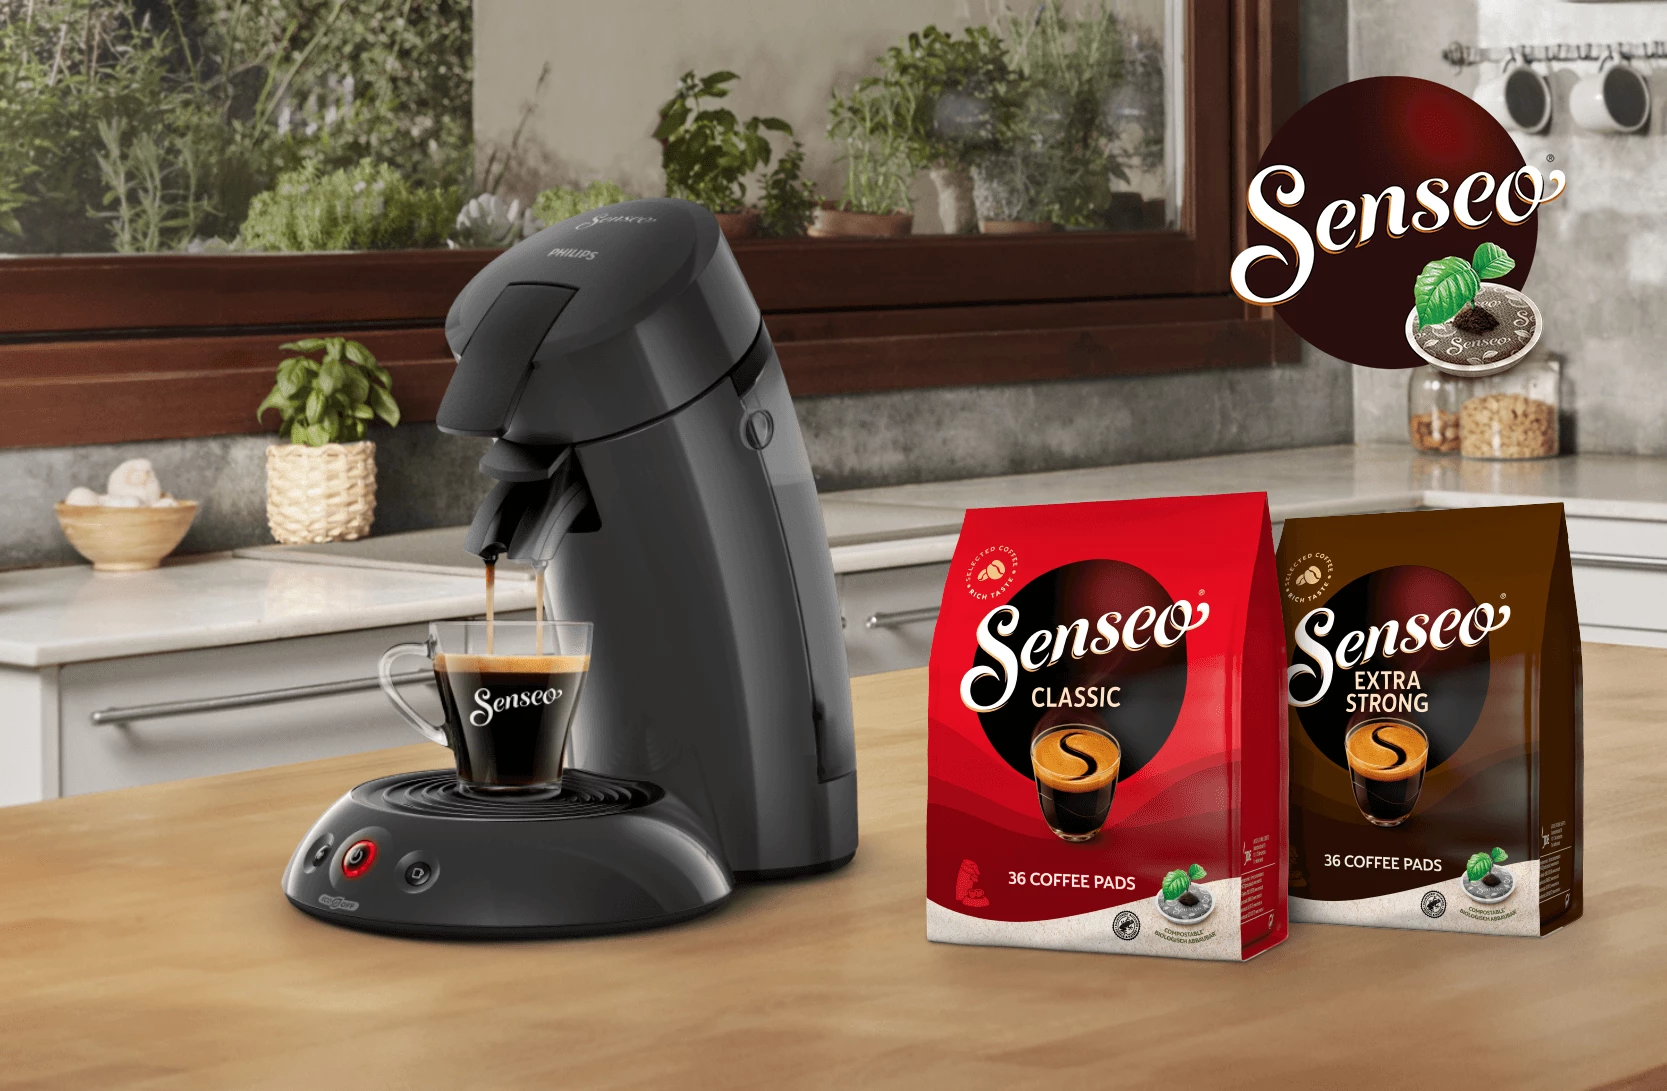 Fantasifulde brugerdefinerede Gods Senseo Kaffemaskiner til kaffepuder | Find kapselmaskiner her